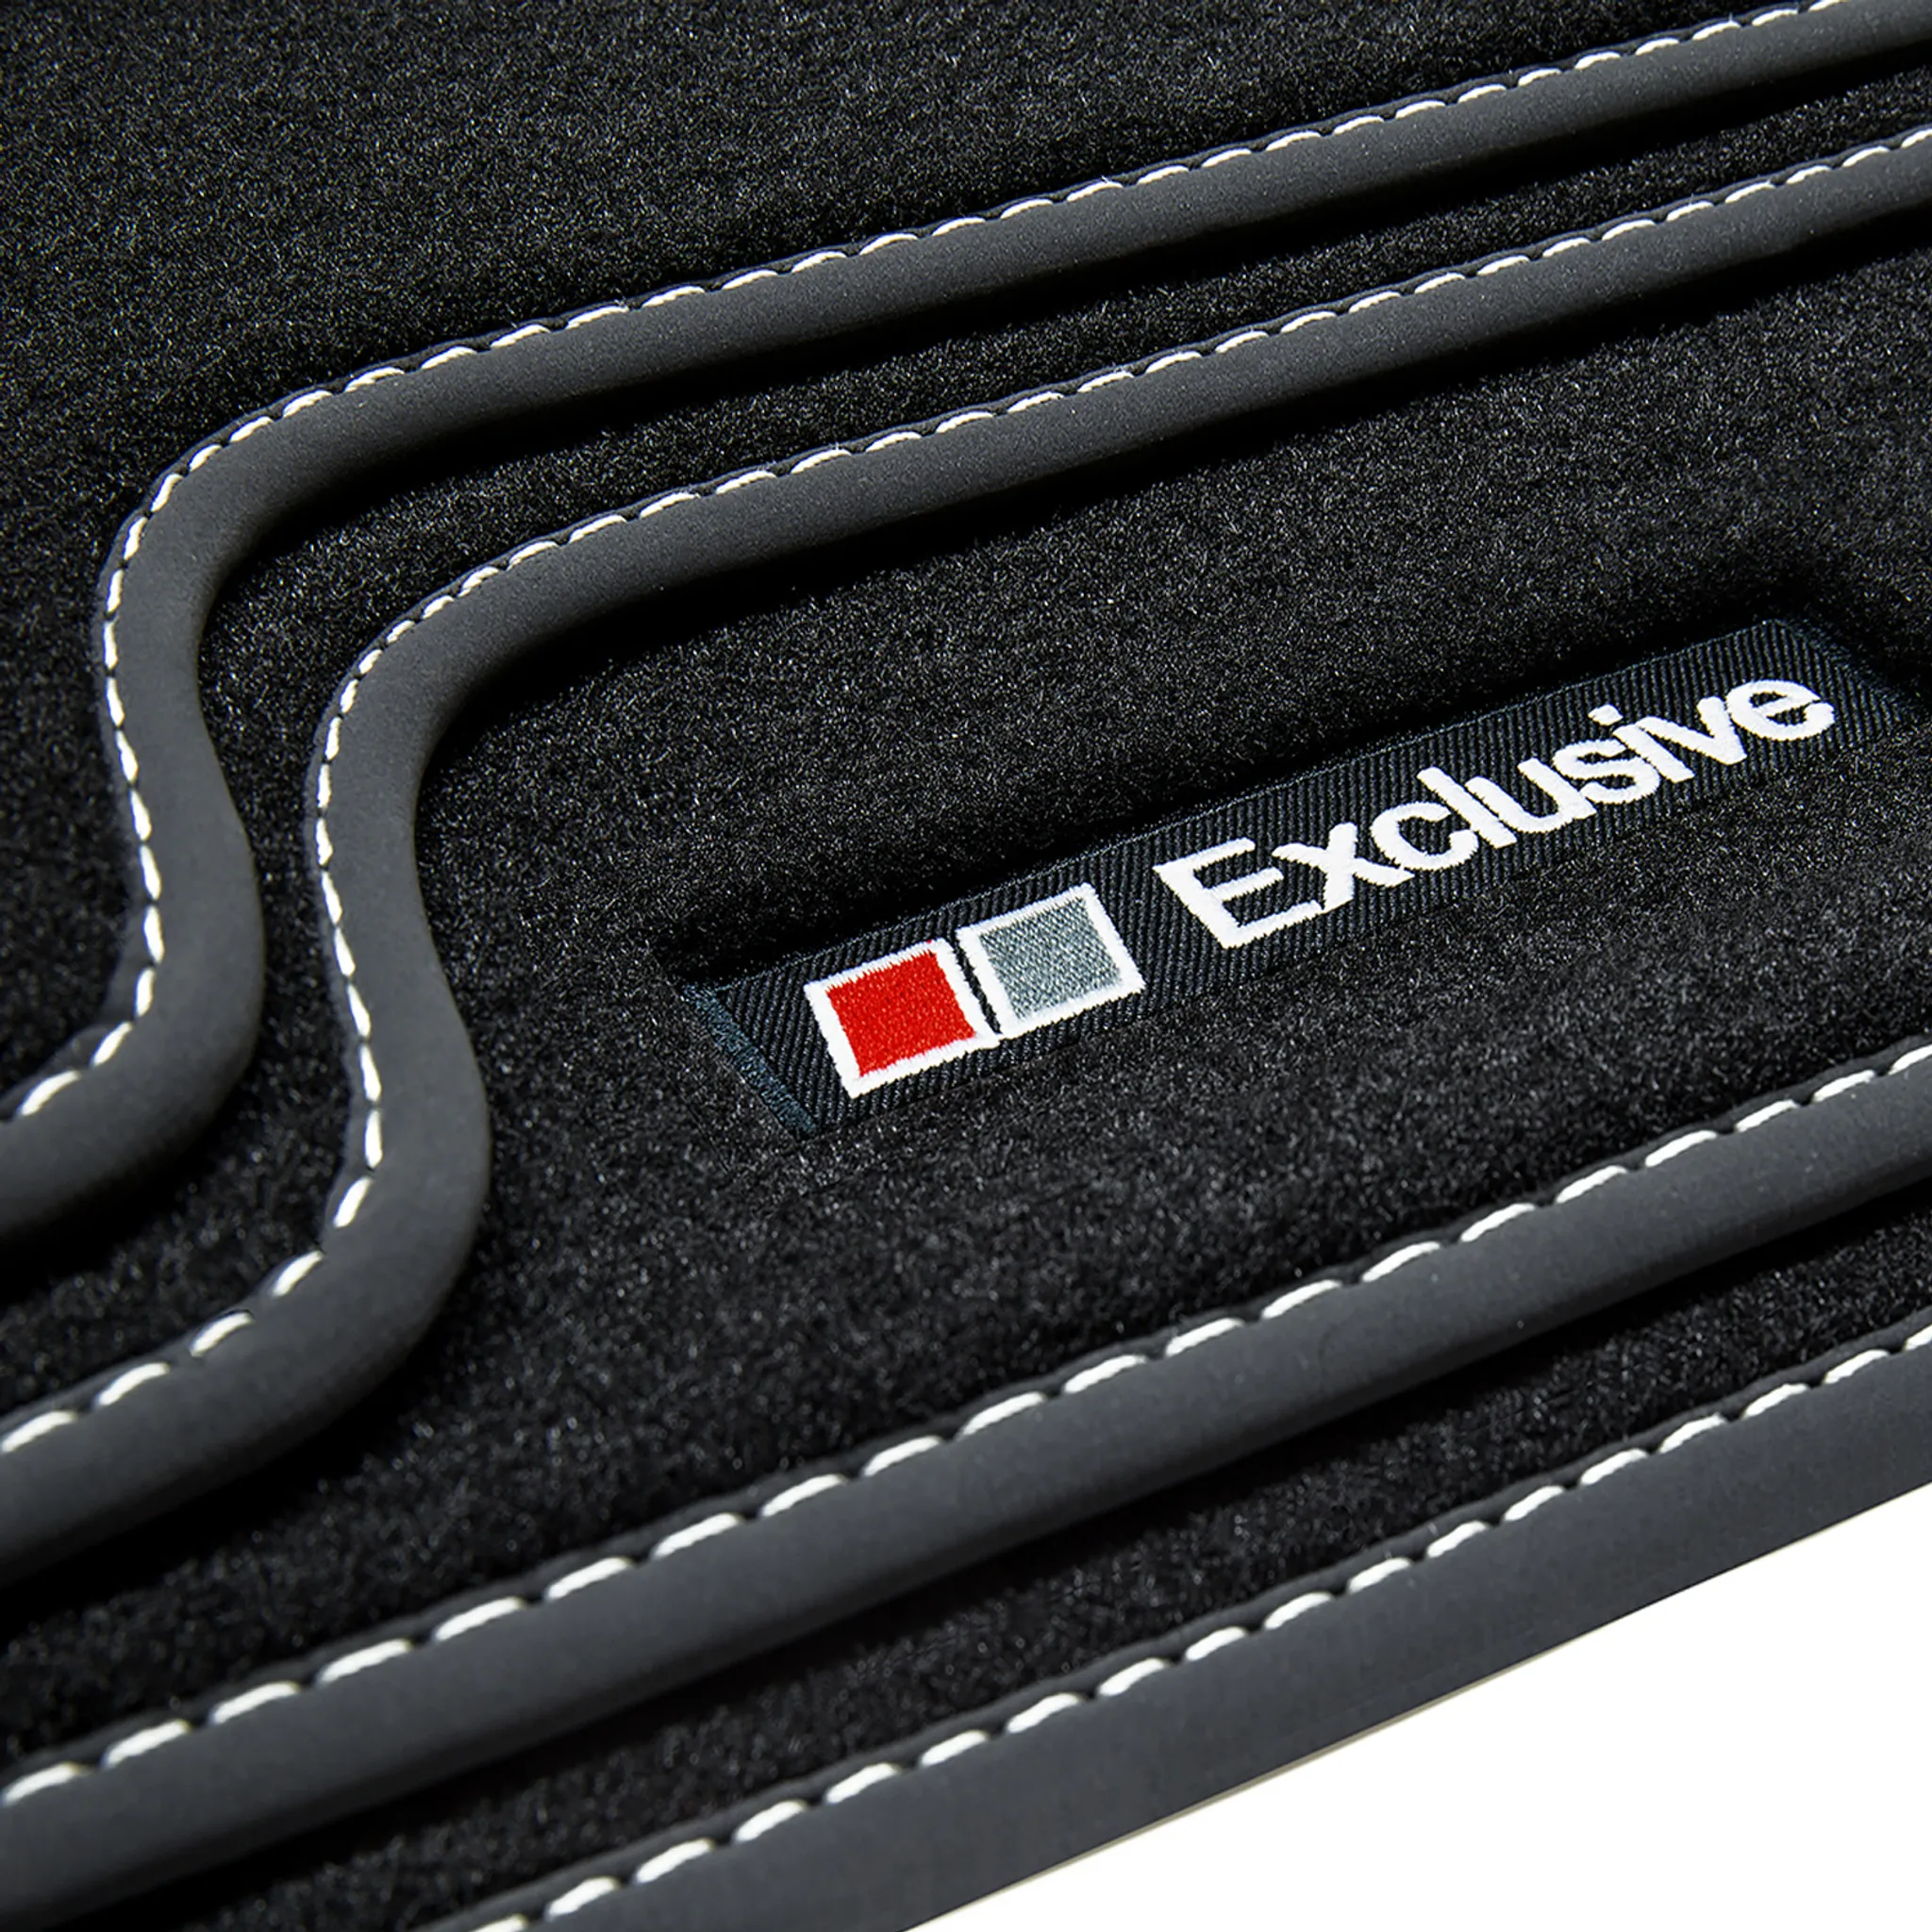 Line 8X für Audi Exclusive A1 Fußmatten